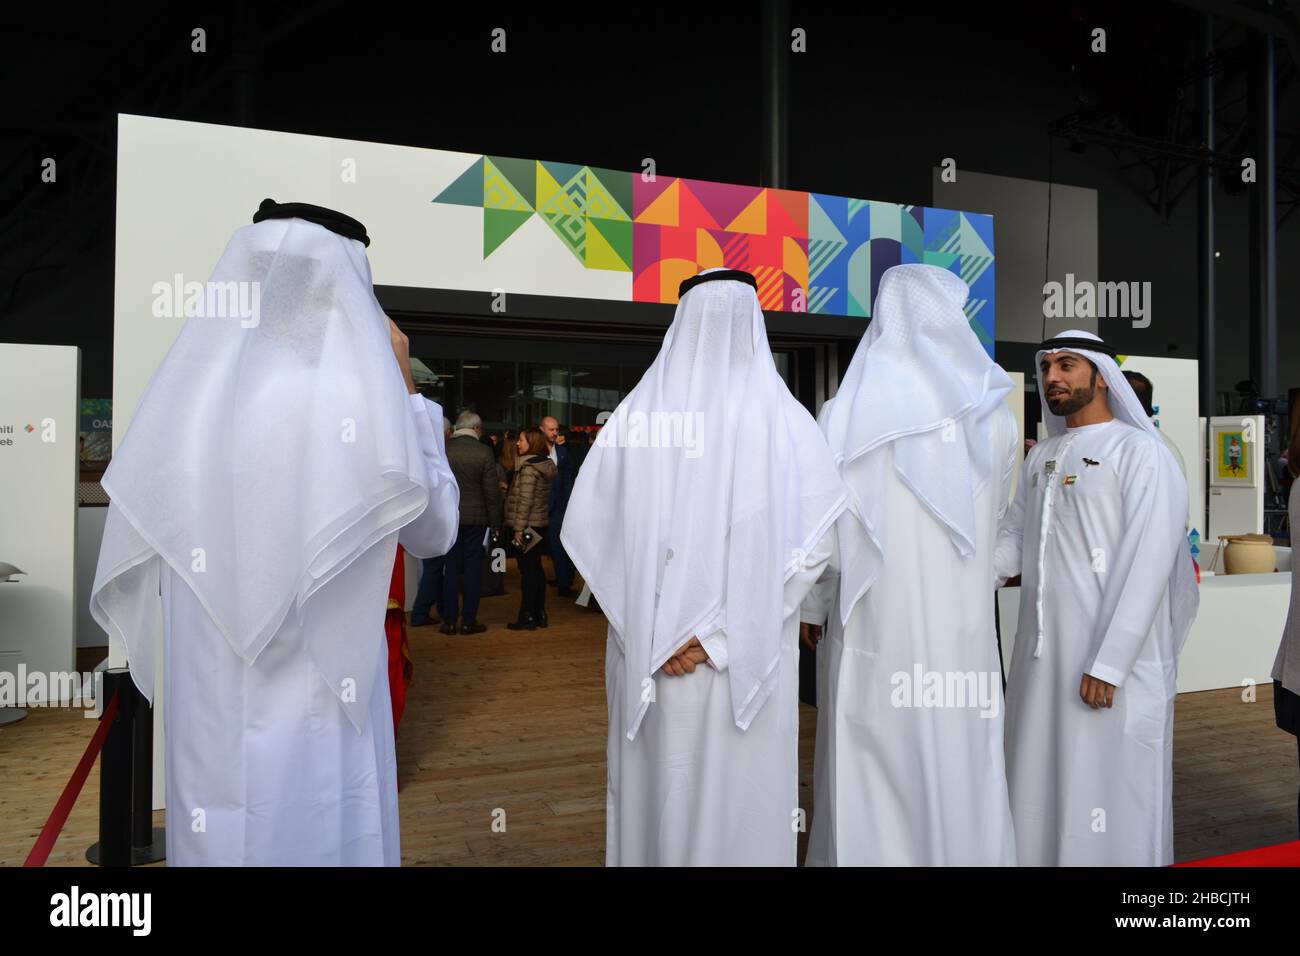 Mailand, Italien - 20. Oktober 2015: Arabische Geschäftsleute in islamischer Kleidung stehen am Eingang der Pressekonferenz während des Tages der Vereinigten Arabischen Emirate. Stockfoto